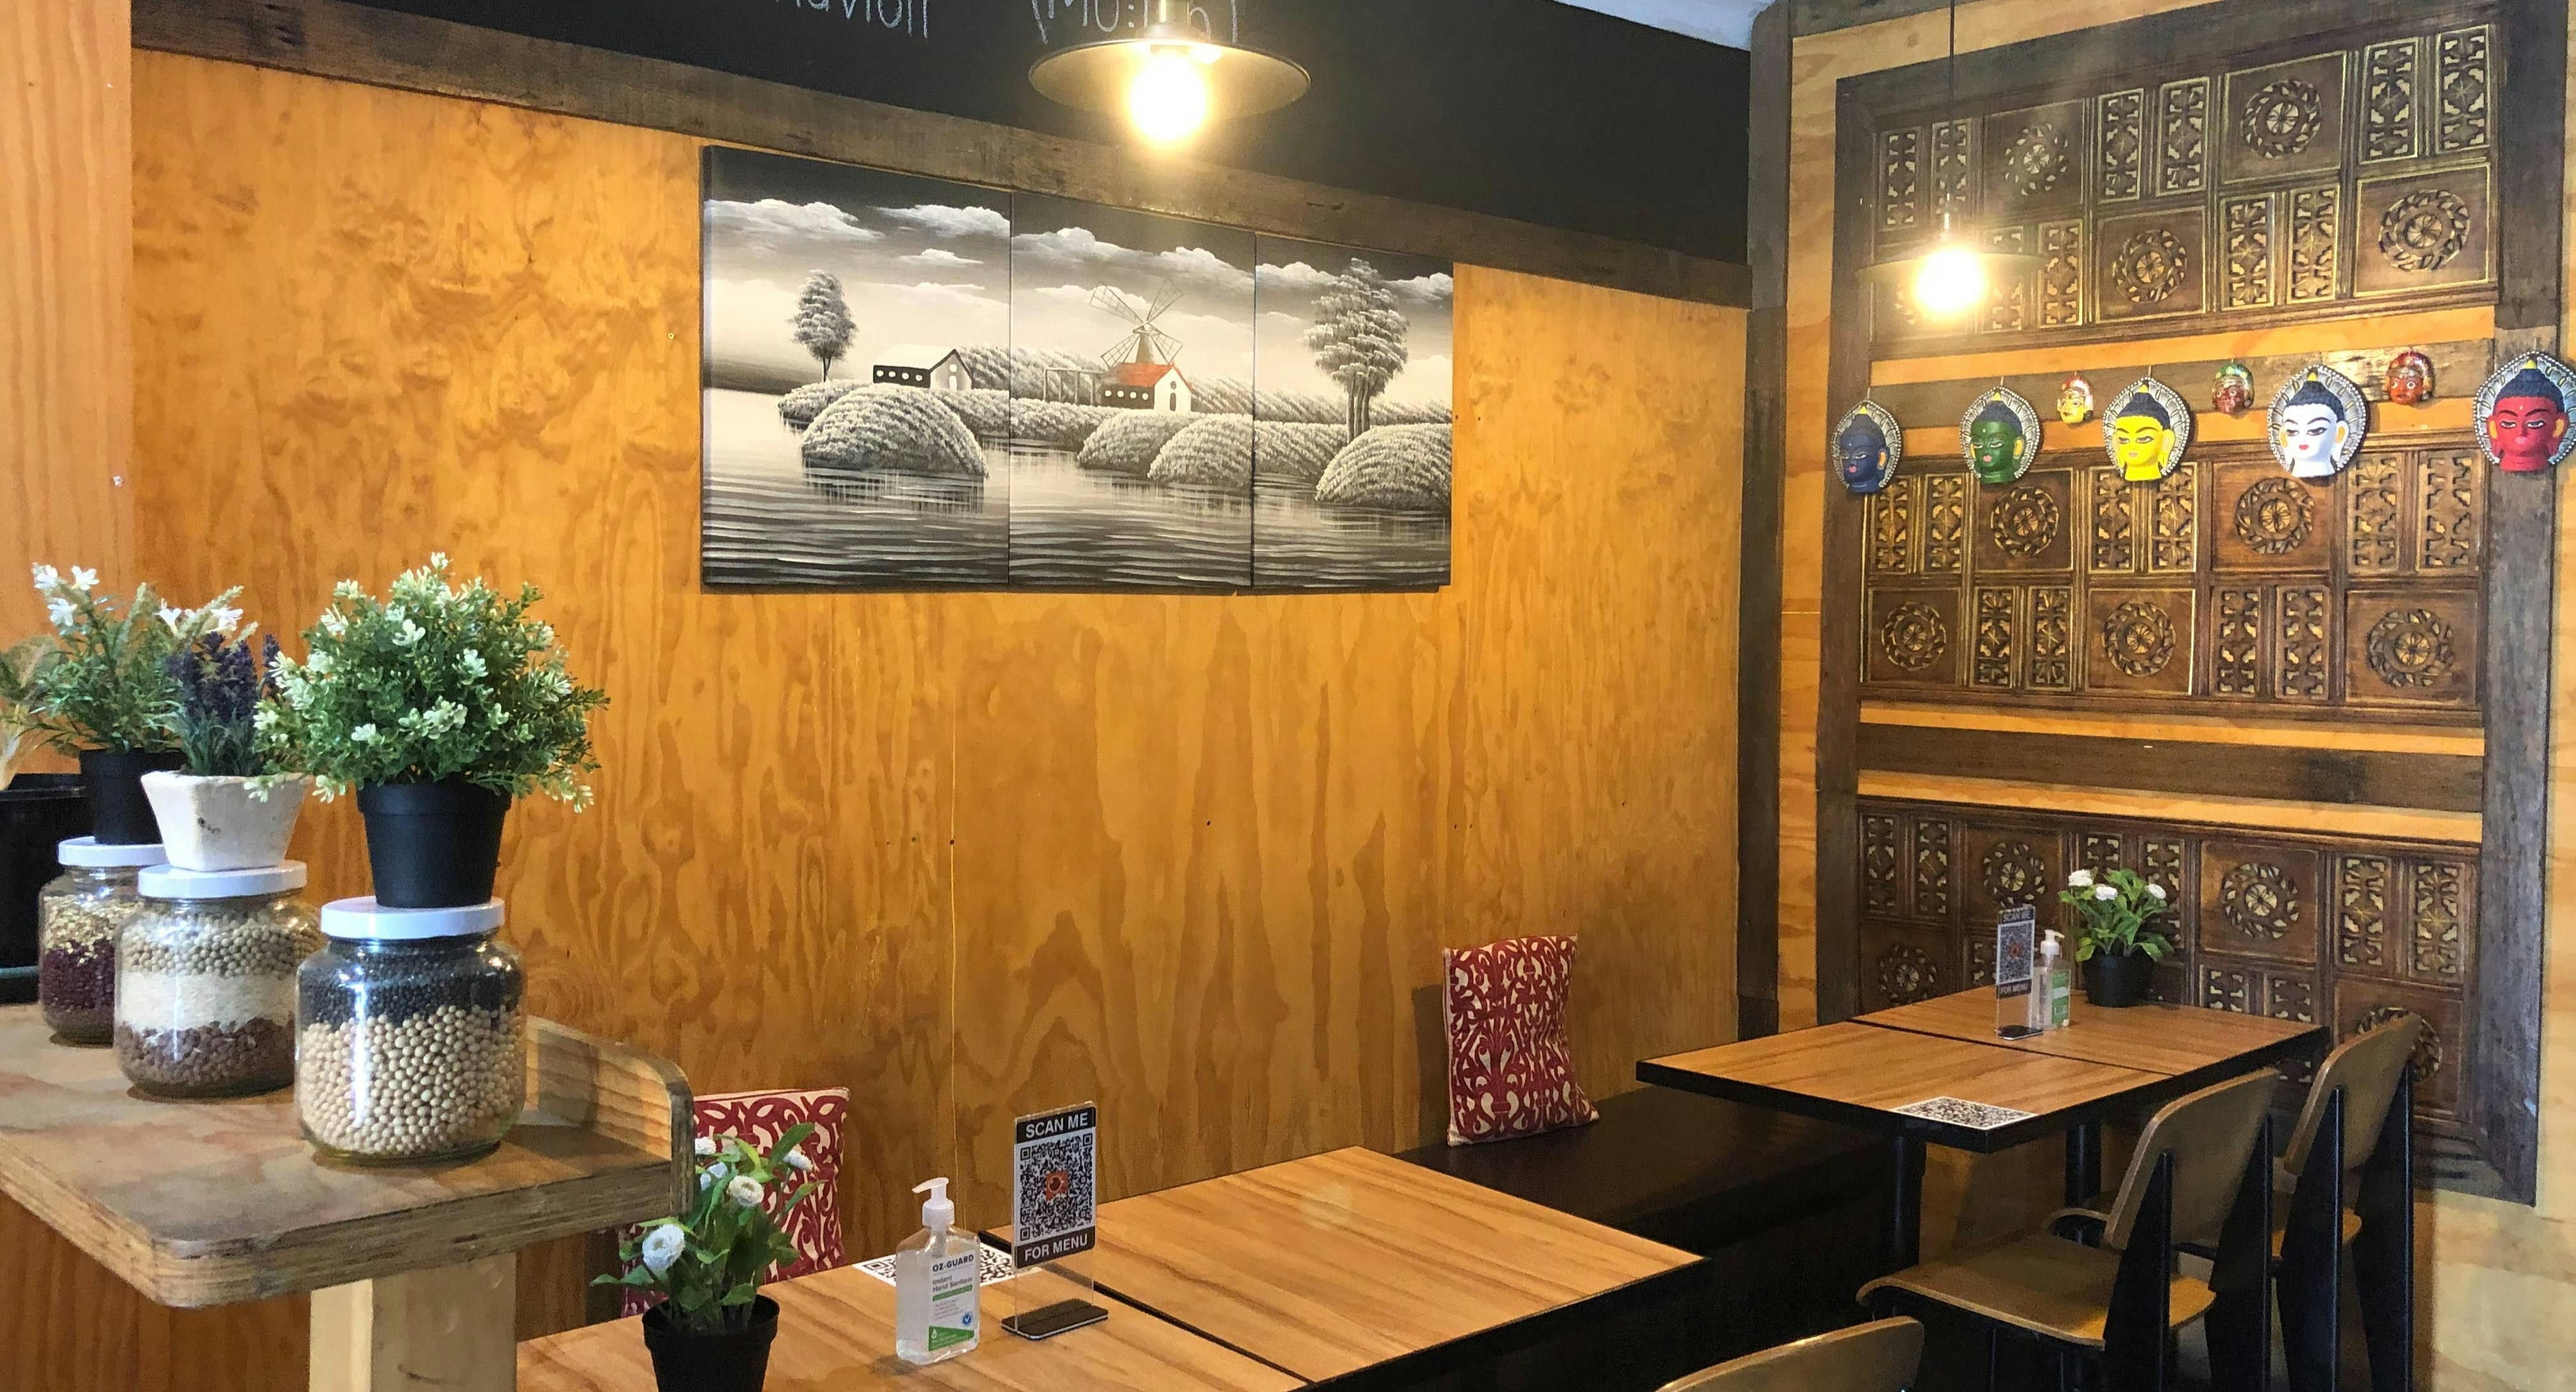 Photo of restaurant Cafe Talk Nepalese Restaurant - Campsie in Campsie, Sydney